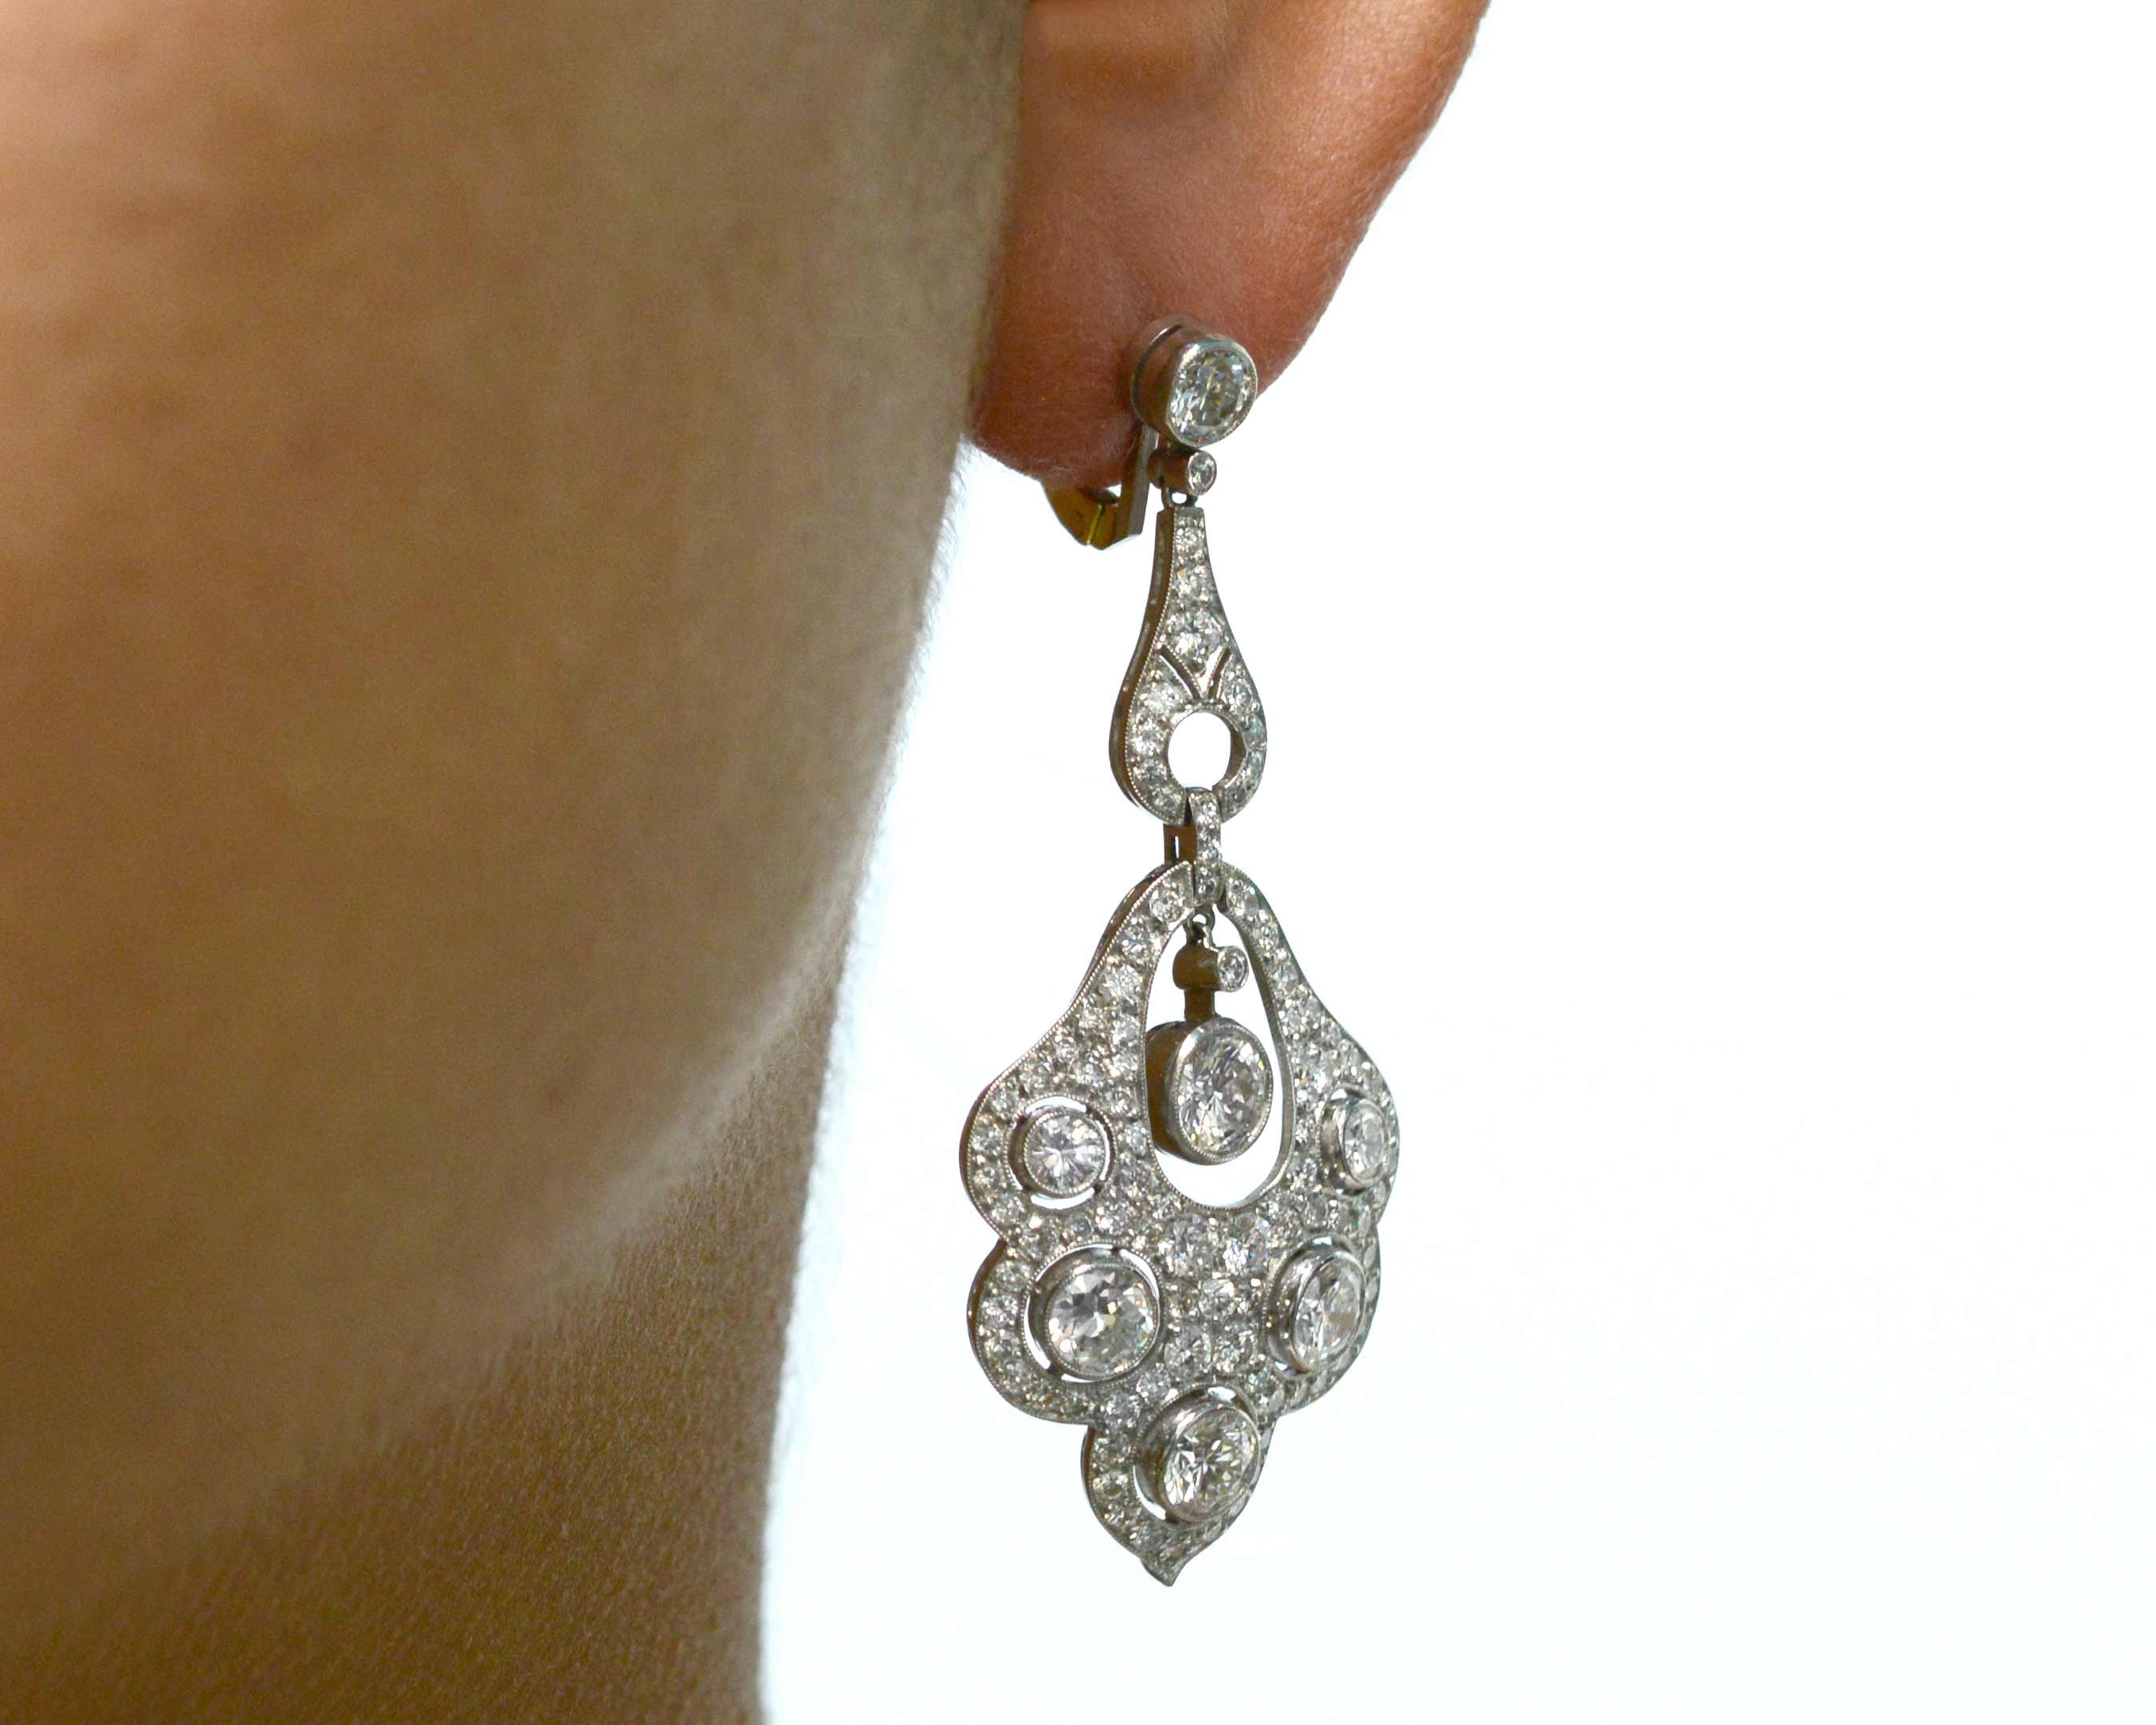 2 inch long dangling diamond chandelier earrings.